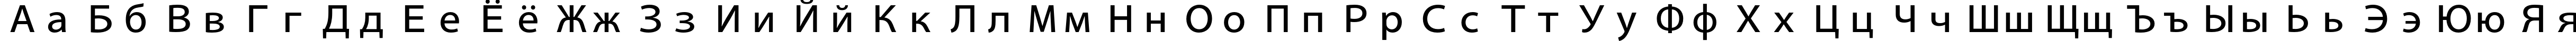 Пример написания русского алфавита шрифтом Adobe Fan Heiti Std B